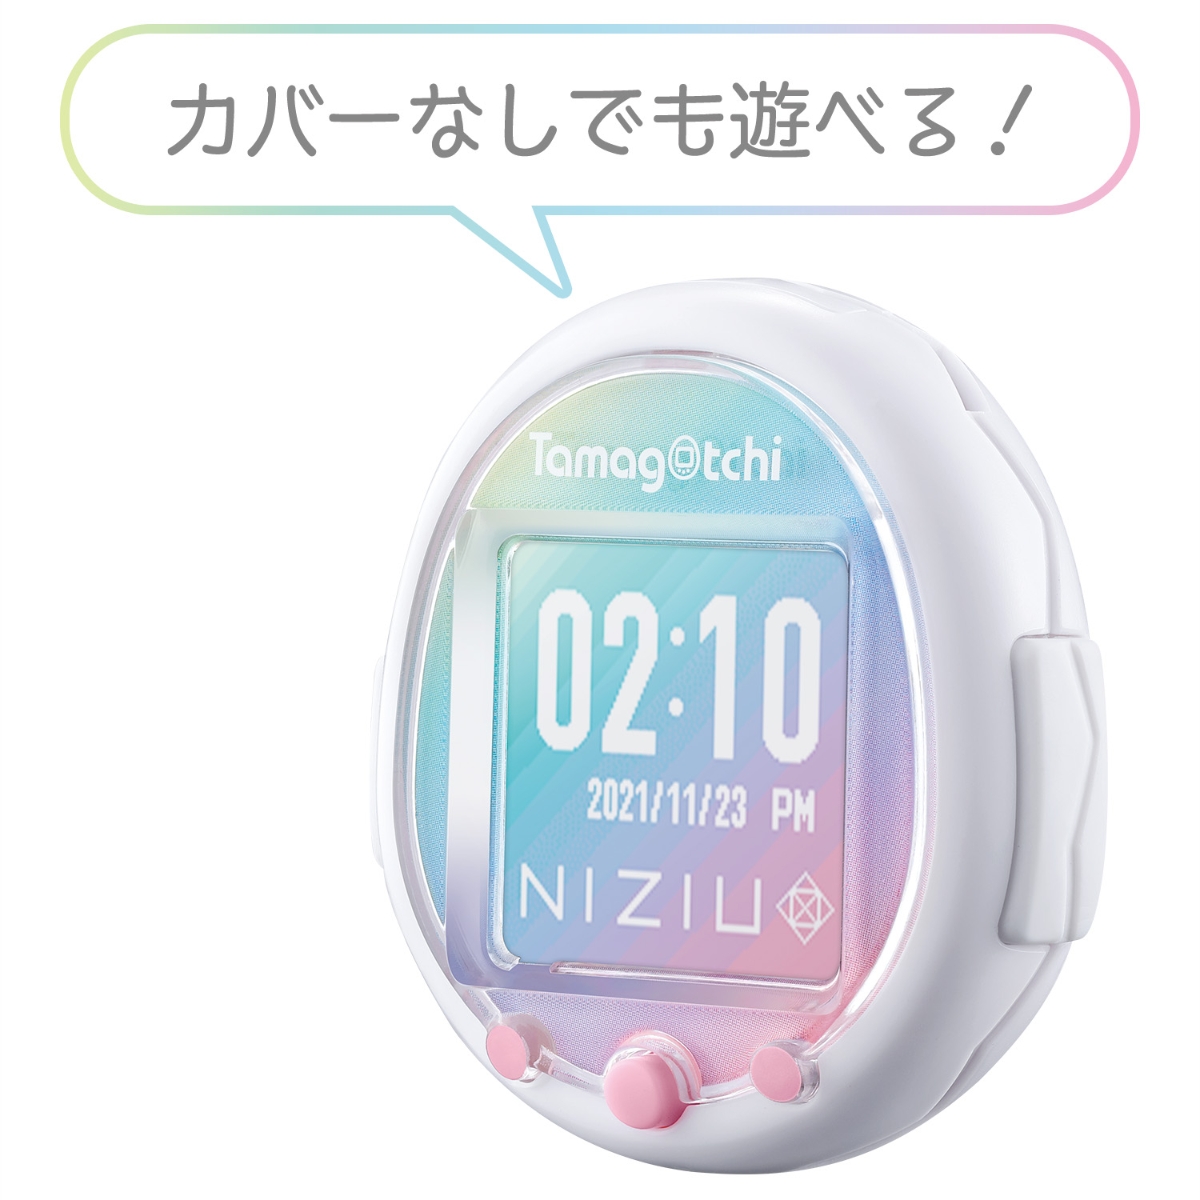 特典】Tamagotchi Smart NiziUスペシャルセット(【外付特典】NiziU